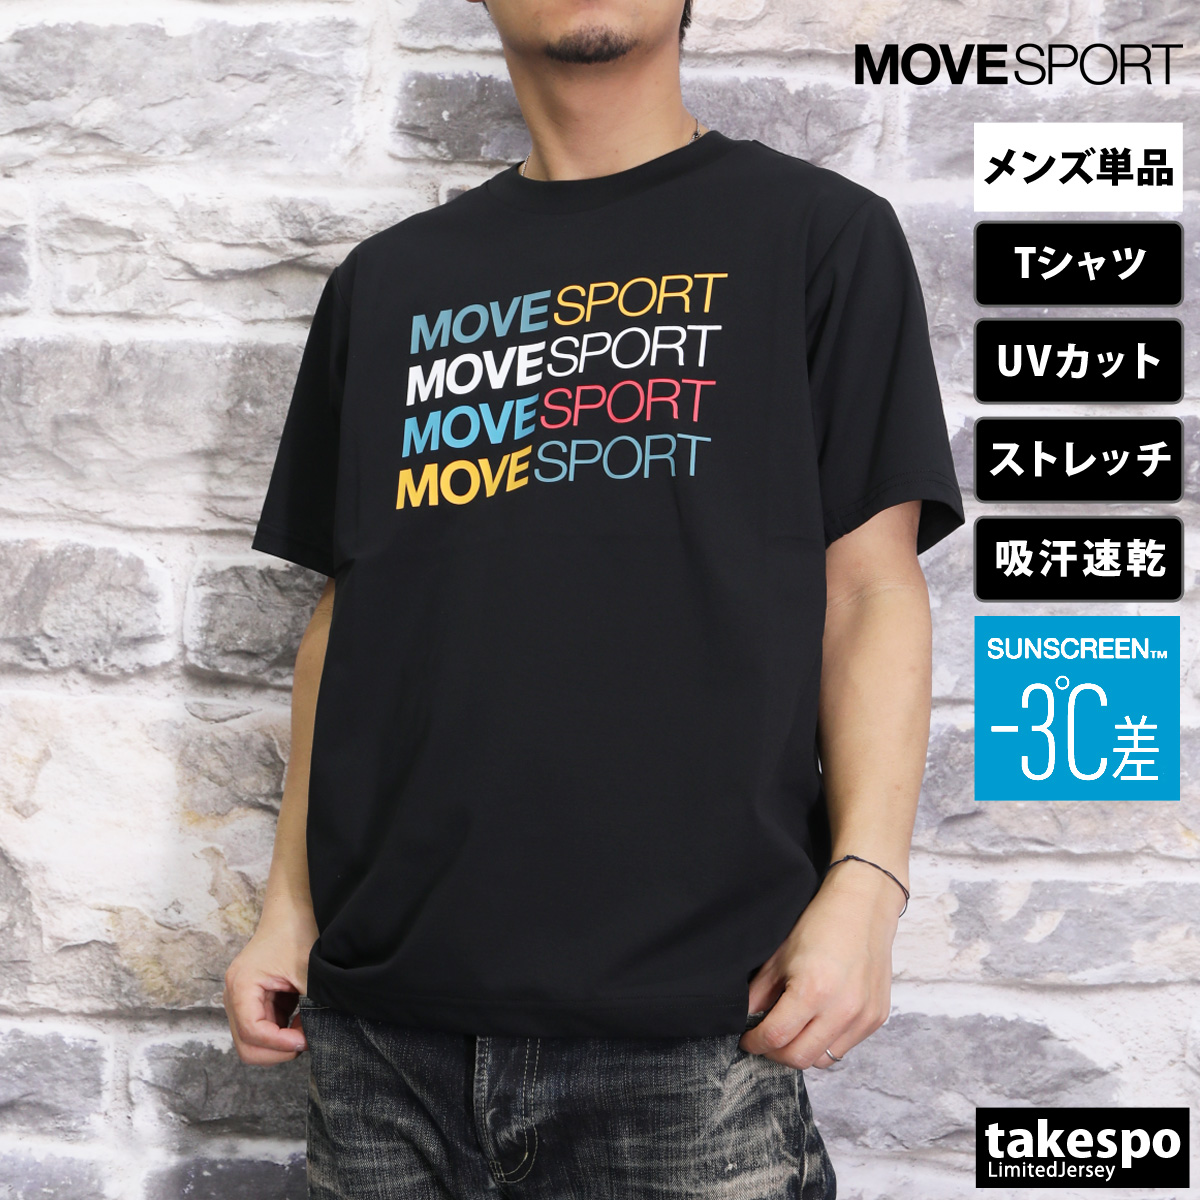 ムーブスポーツ Tシャツ メンズ 上 MOVESPORT DESCENTE 吸汗 速乾 UVカット ...